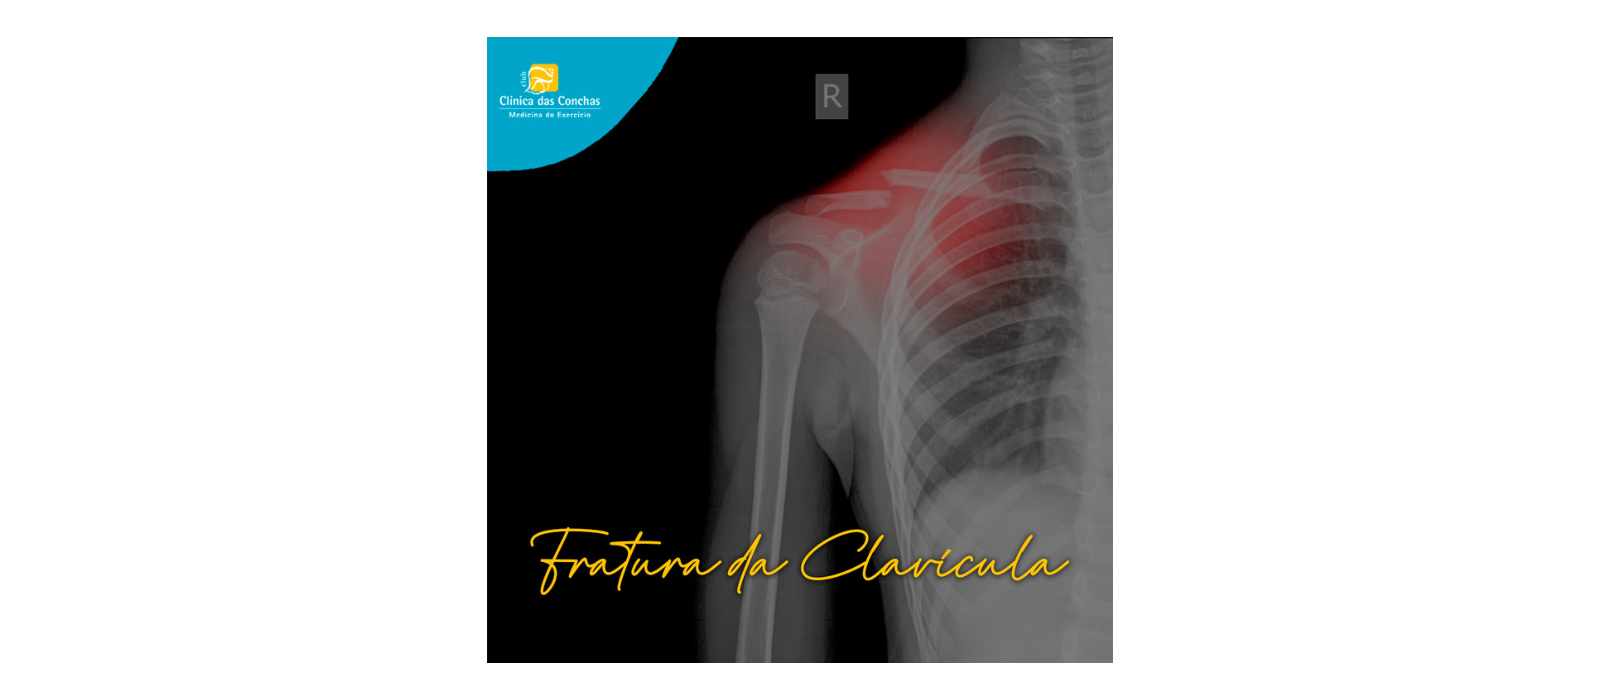 Sabia que uma fratura da Clavícula representa 4% de todos os tipos de fratura e 35% de todas as lesões no ombro?